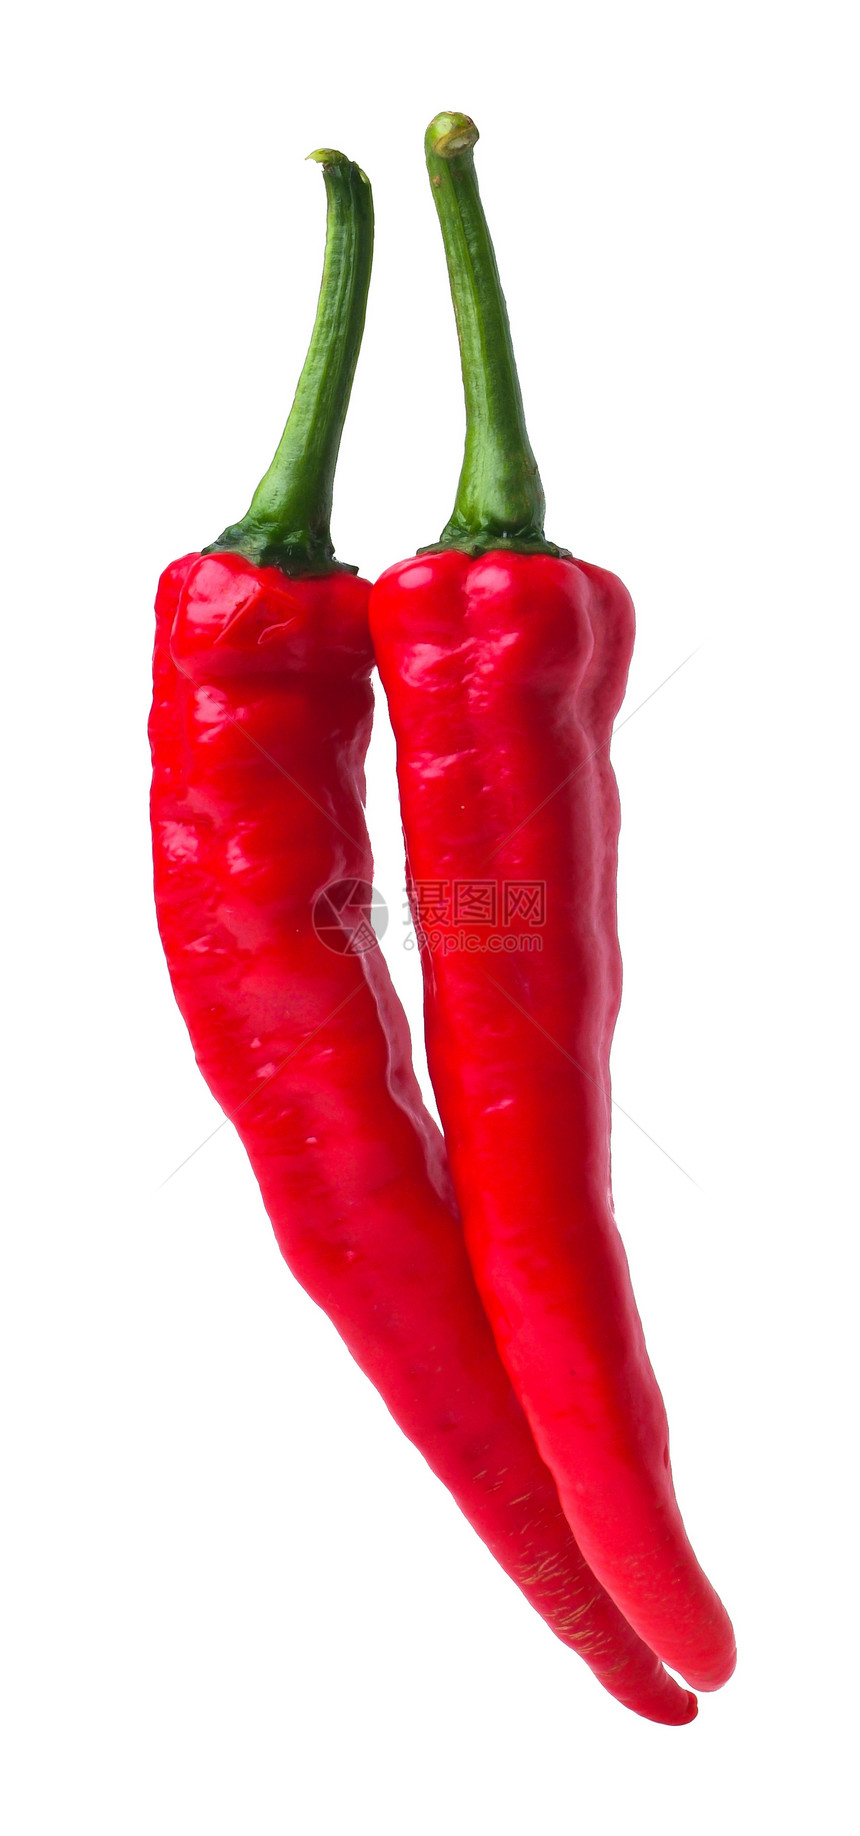 红辣椒蔬菜孤独香料辣椒胡椒红色食物寒冷图片